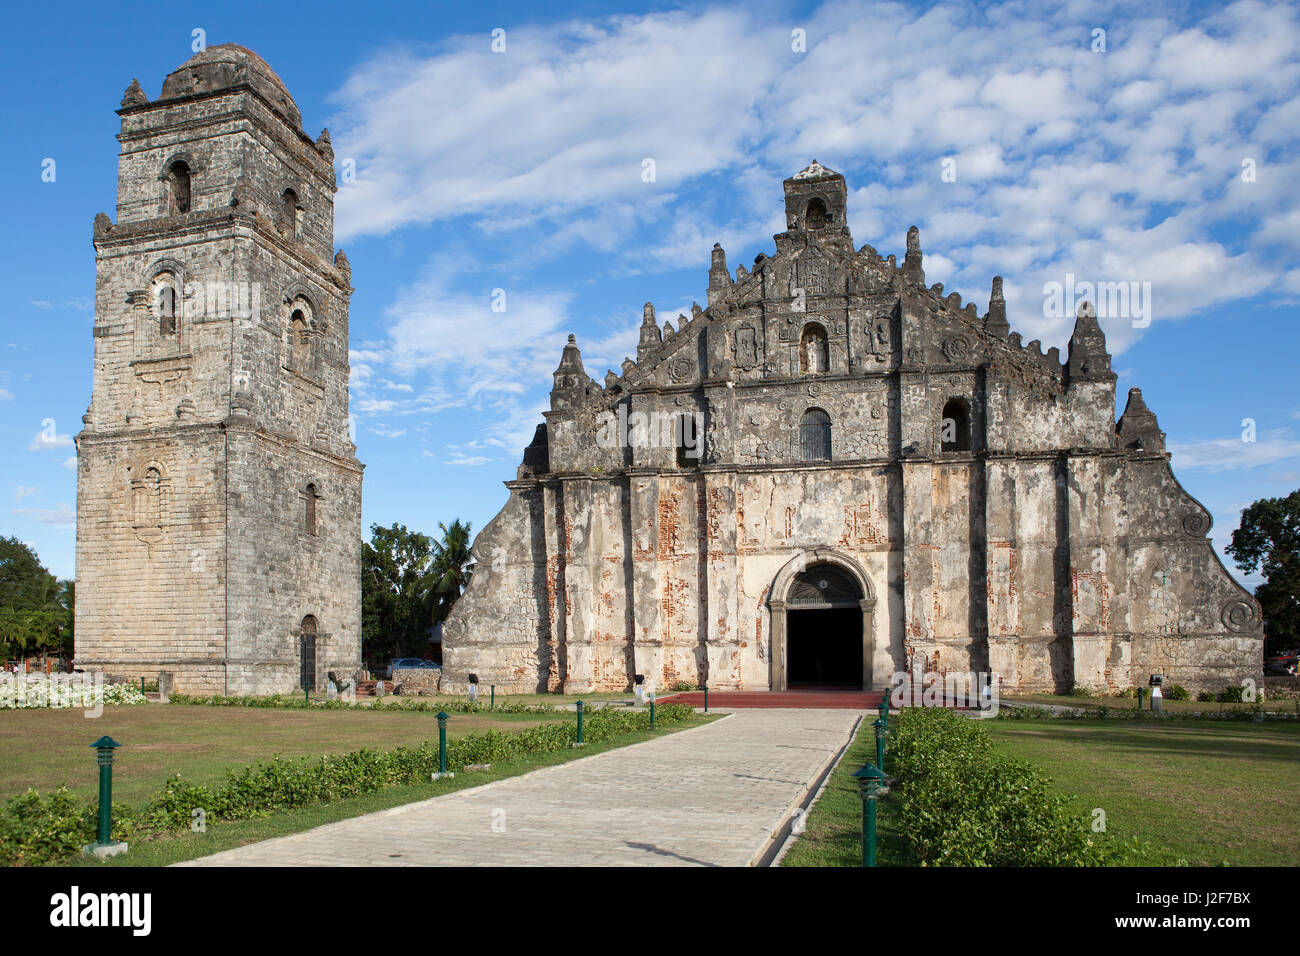 Die Kirche von San Augustin, bekannt als Paoay Kirche ist eine Kirche aus dem 18. Jahrhundert in den Philippinen Paoay Kirche in der nördlichen Provinz Ilocos Norte. Vier barocke Kirchen der Philippinen, einschließlich der Kirche, sind seit 1993 auf der UNESCO-World Heritage Site wegen seiner einzigartigen Kombination aus Barock und orientalischen Stil. Der Stil dieser Kirchenbau wird auch als Erdbeben Barock bezeichnet. Stockfoto